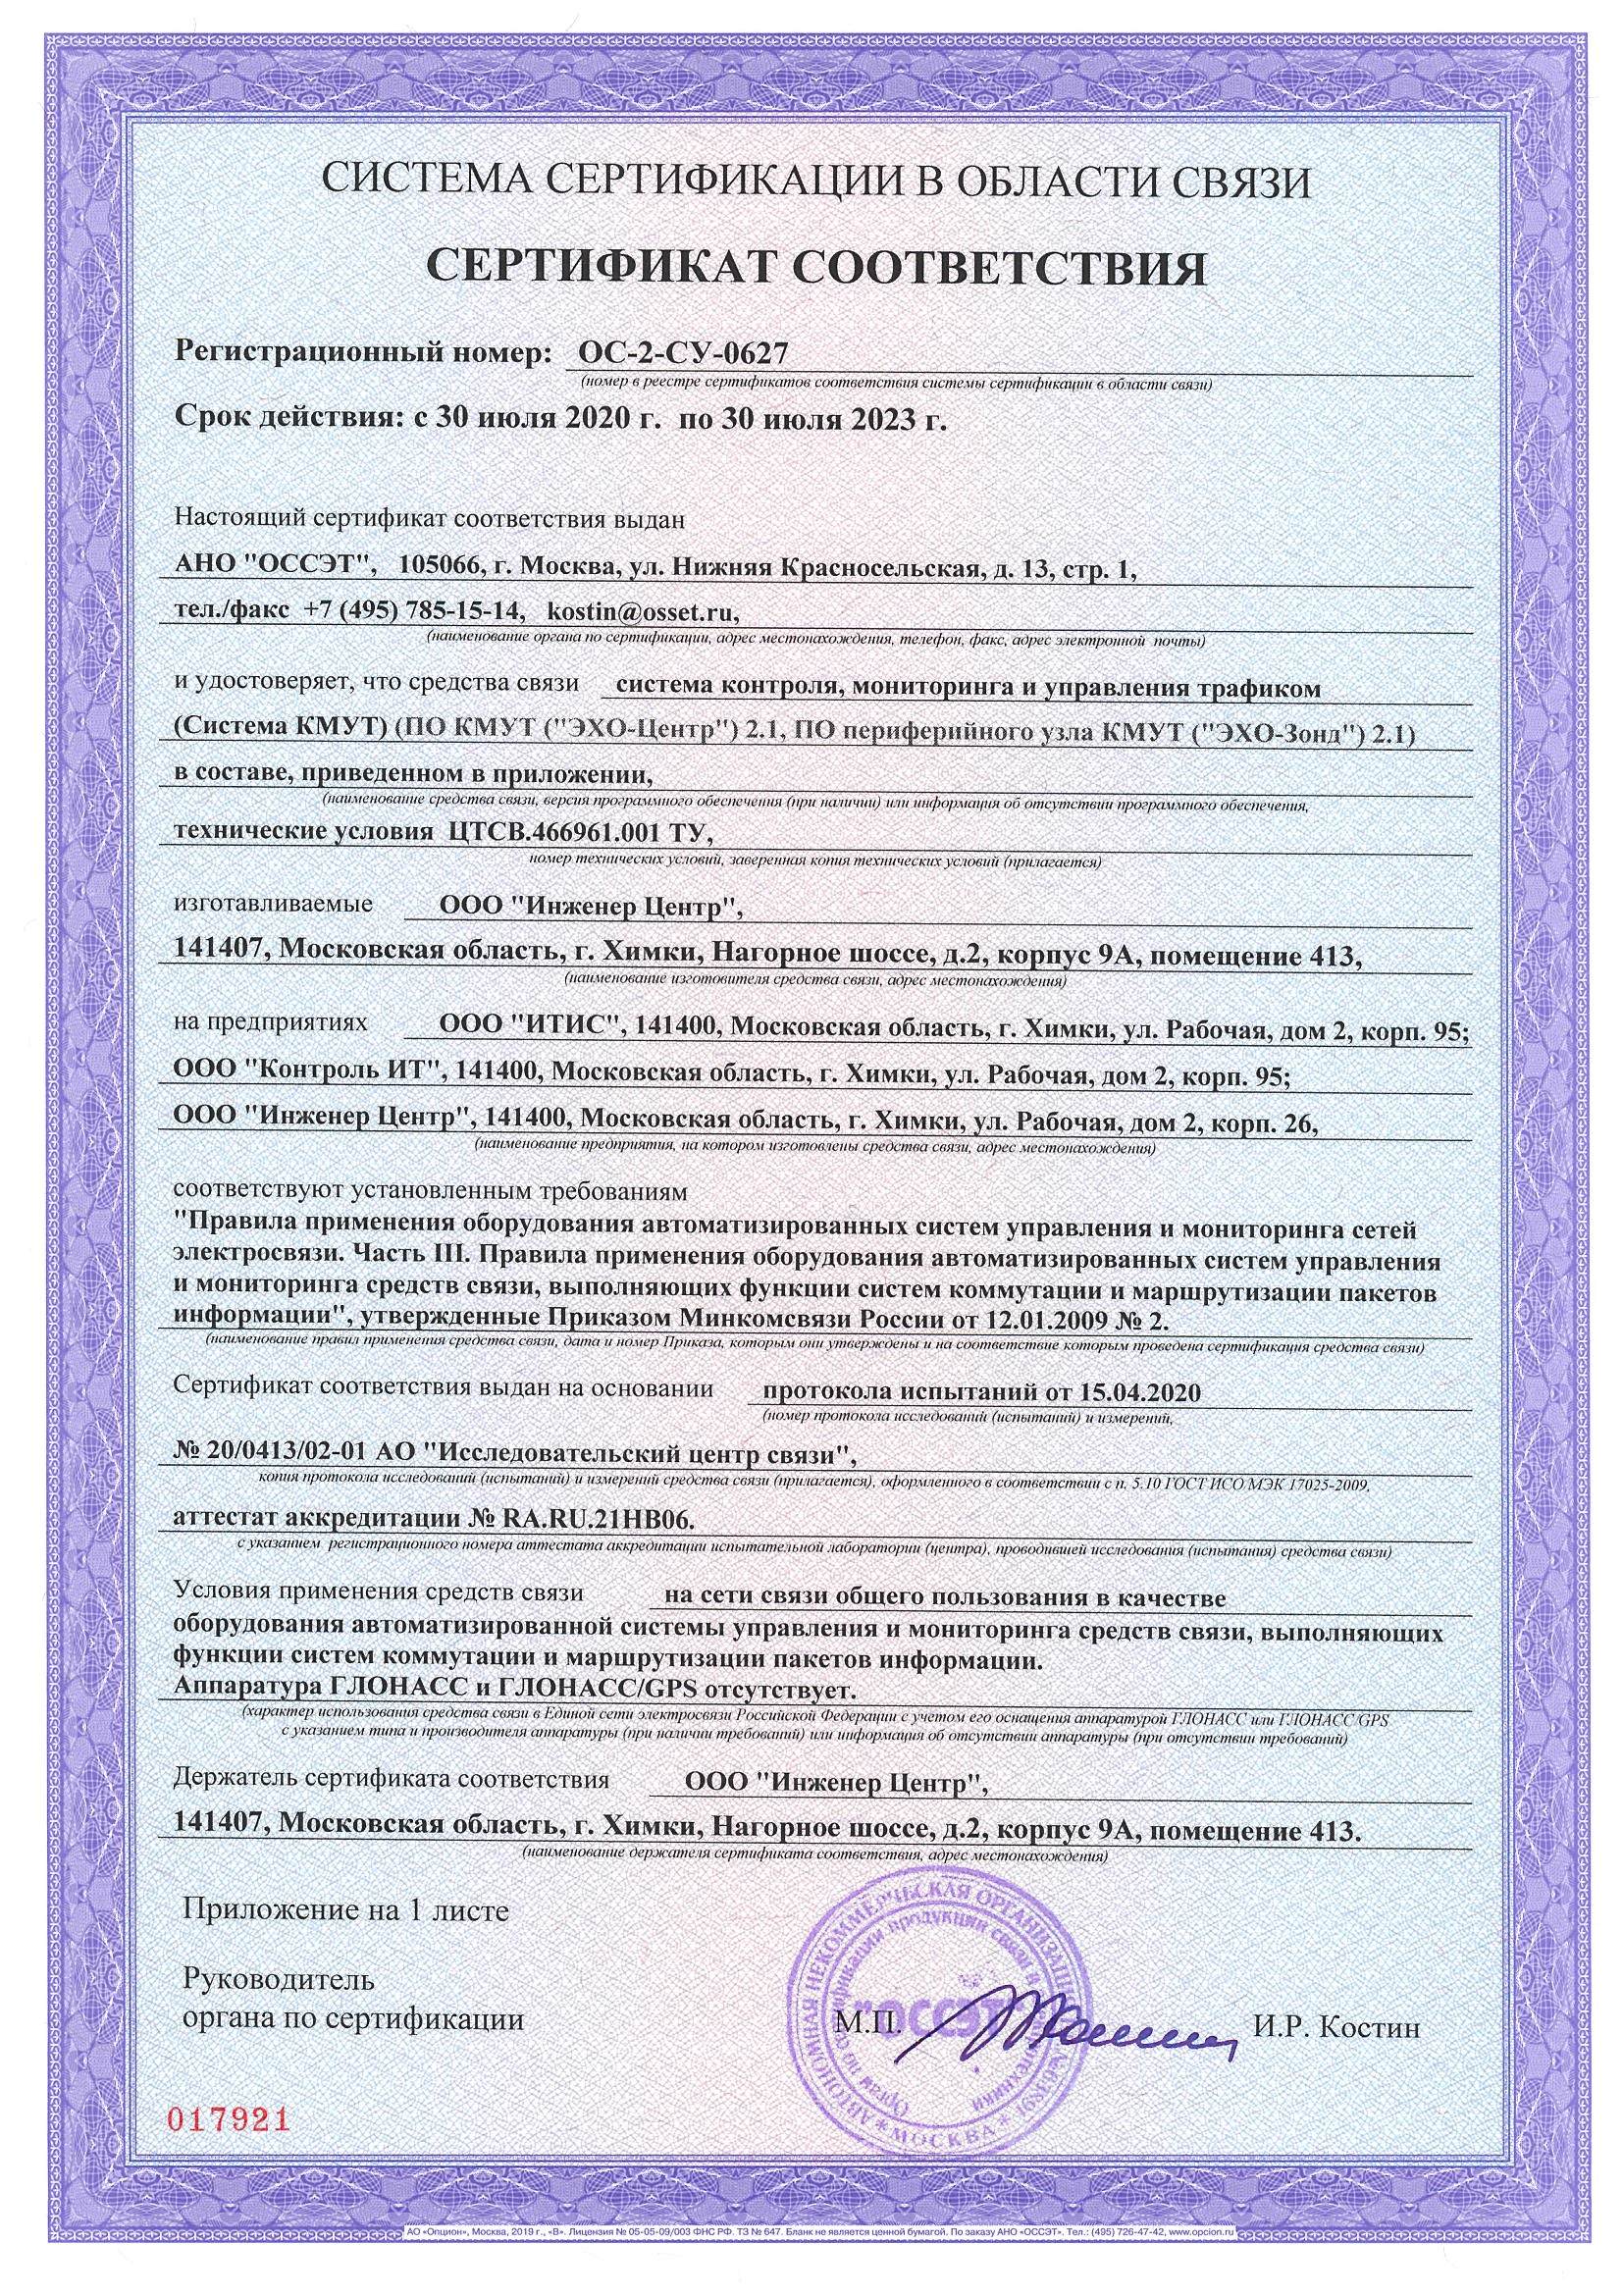 Сертификат соответствия Системы КМУТ ОС-2-СУ-0627